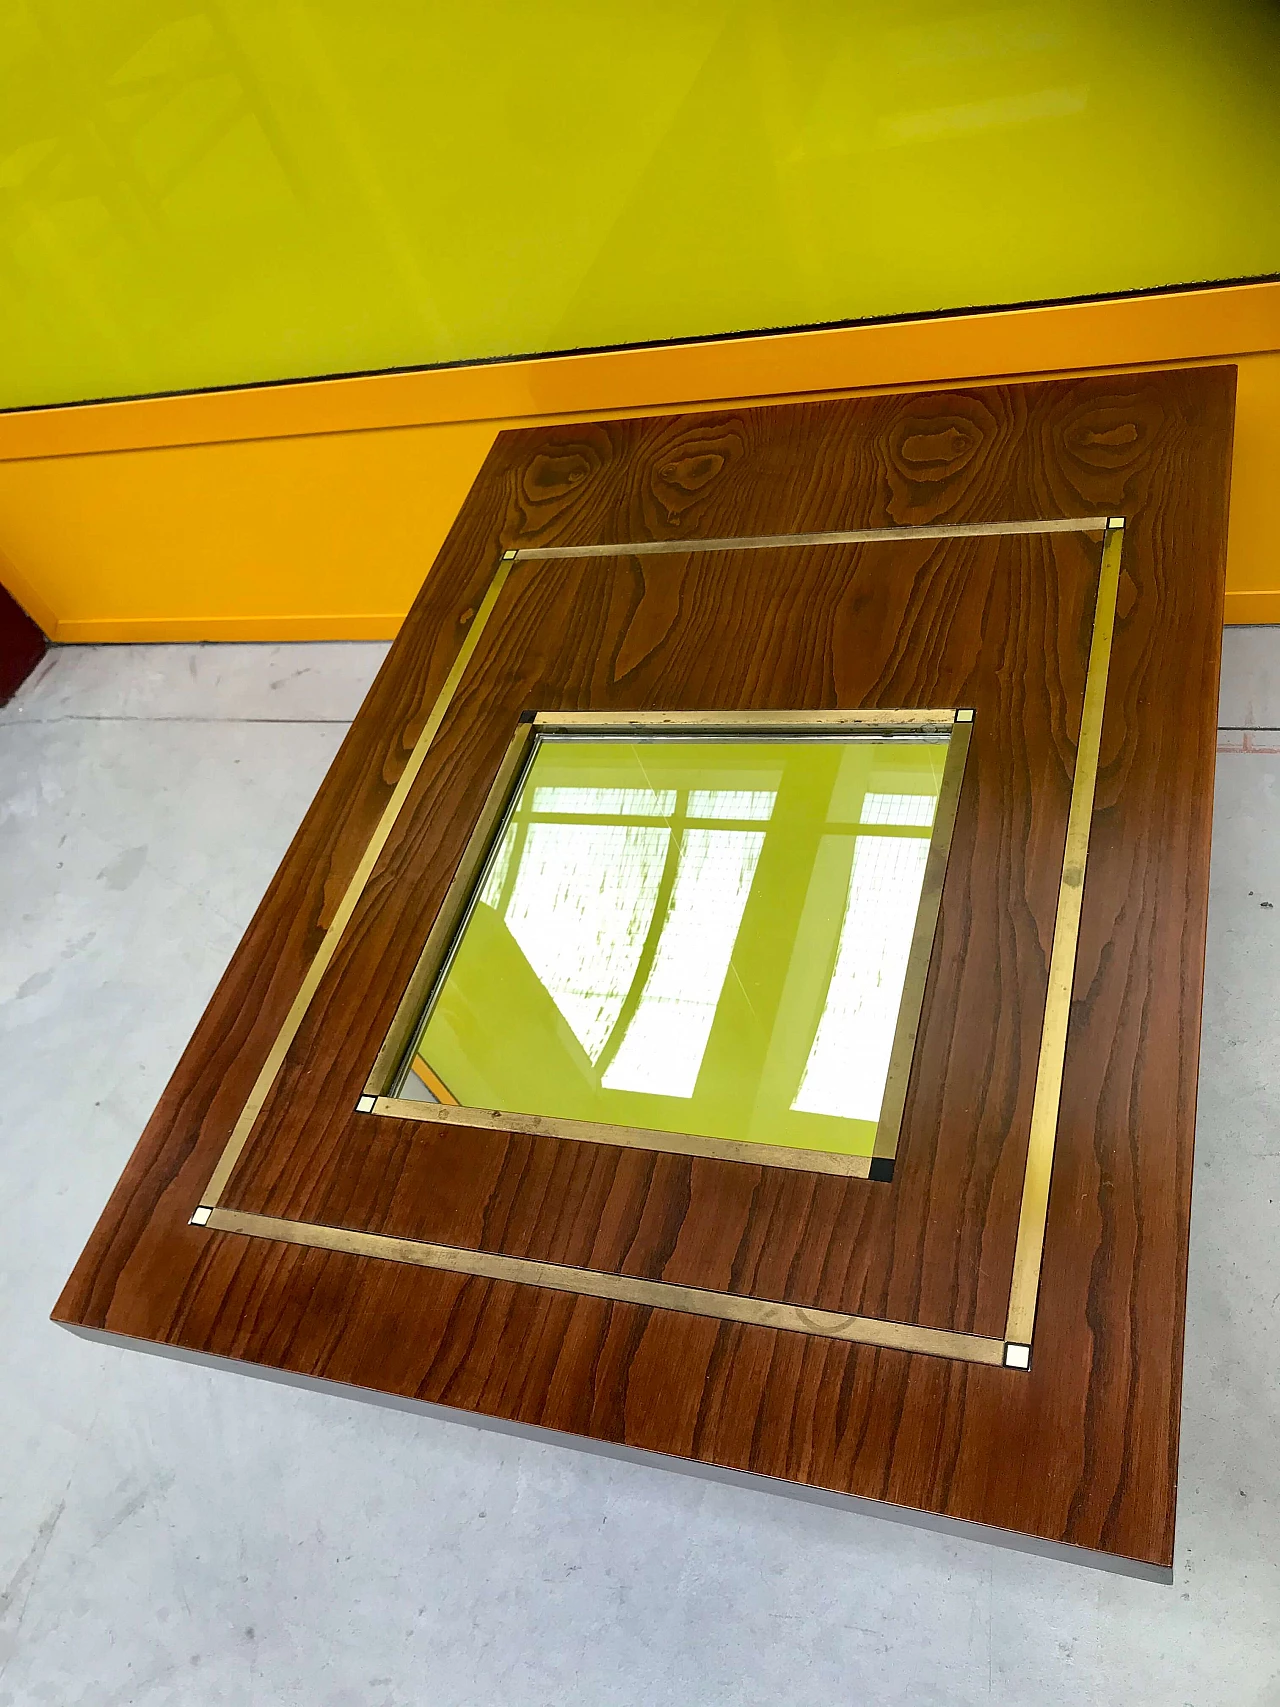 Tavolino da Caffè tipo Willy Rizzo in legno di rovere con specchio e profili di ottone, originale anni '60/'70 1226044